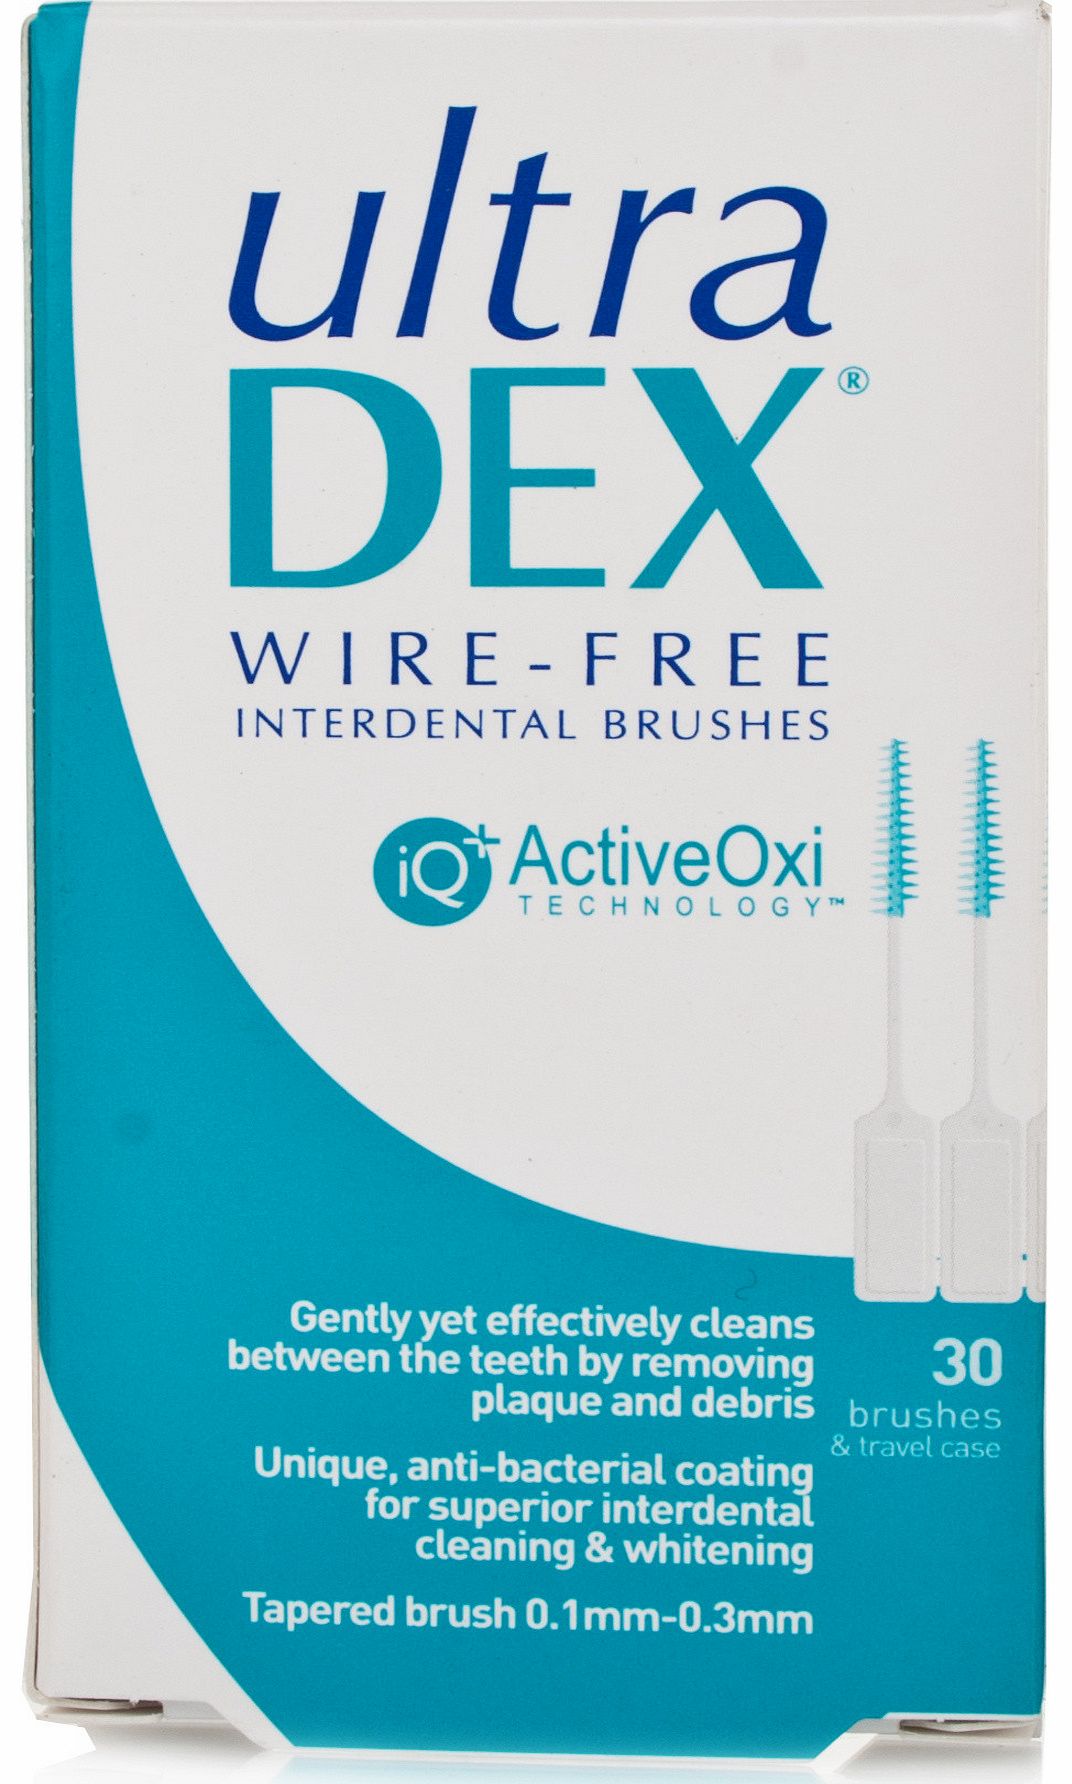 Retardex Ultradex Wire-free Interdental Brushes